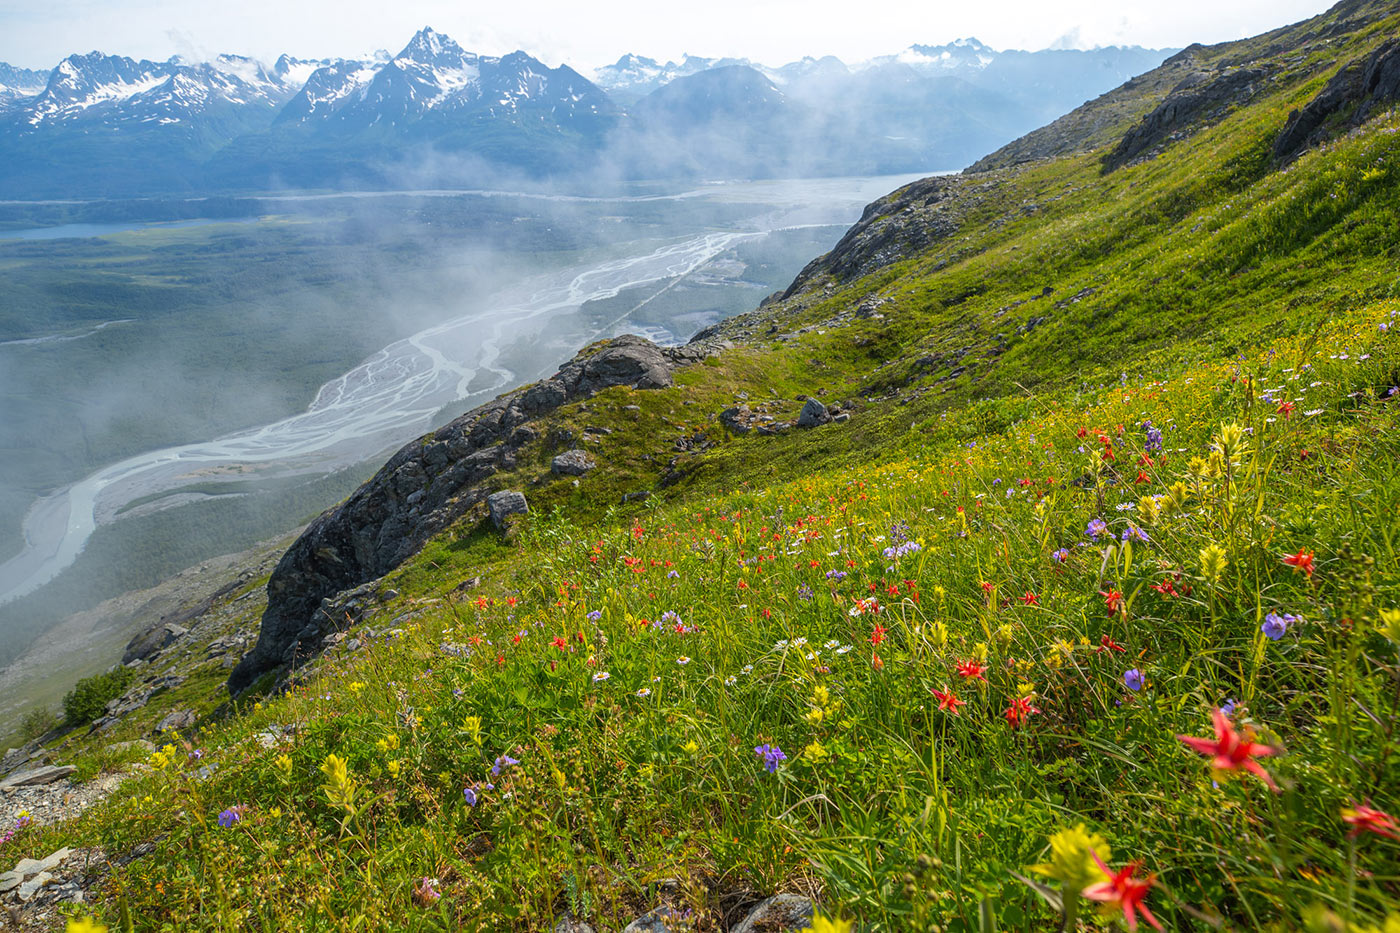 Valdez wildflowers